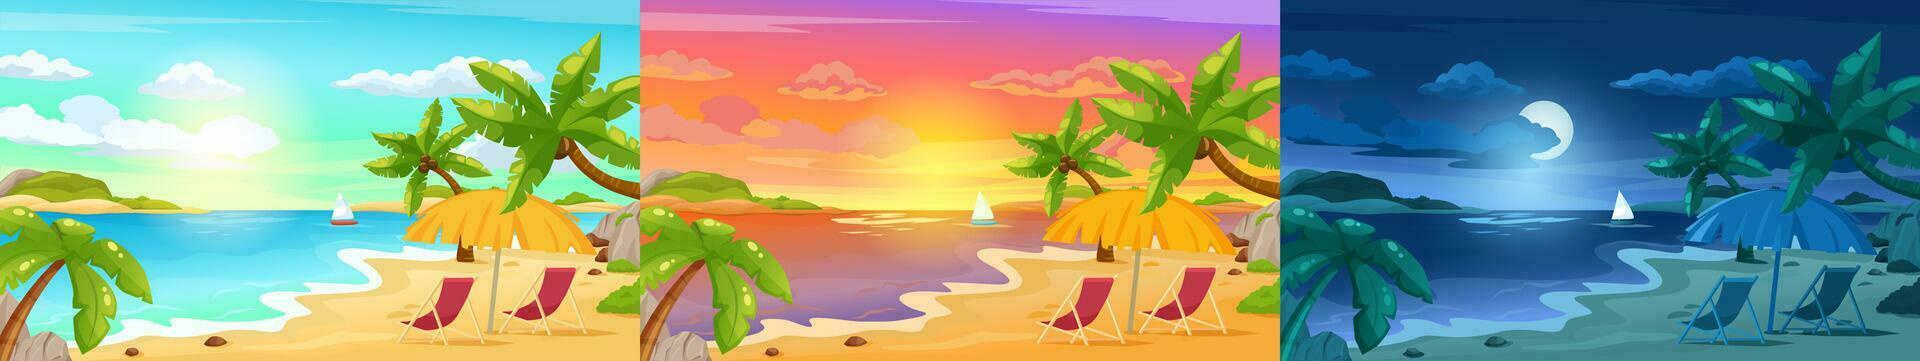 playa paisaje a noche, tropical isla puesta de sol escena. verano fiesta vacaciones, soleado Hora de verano marina con palmas vector ilustración